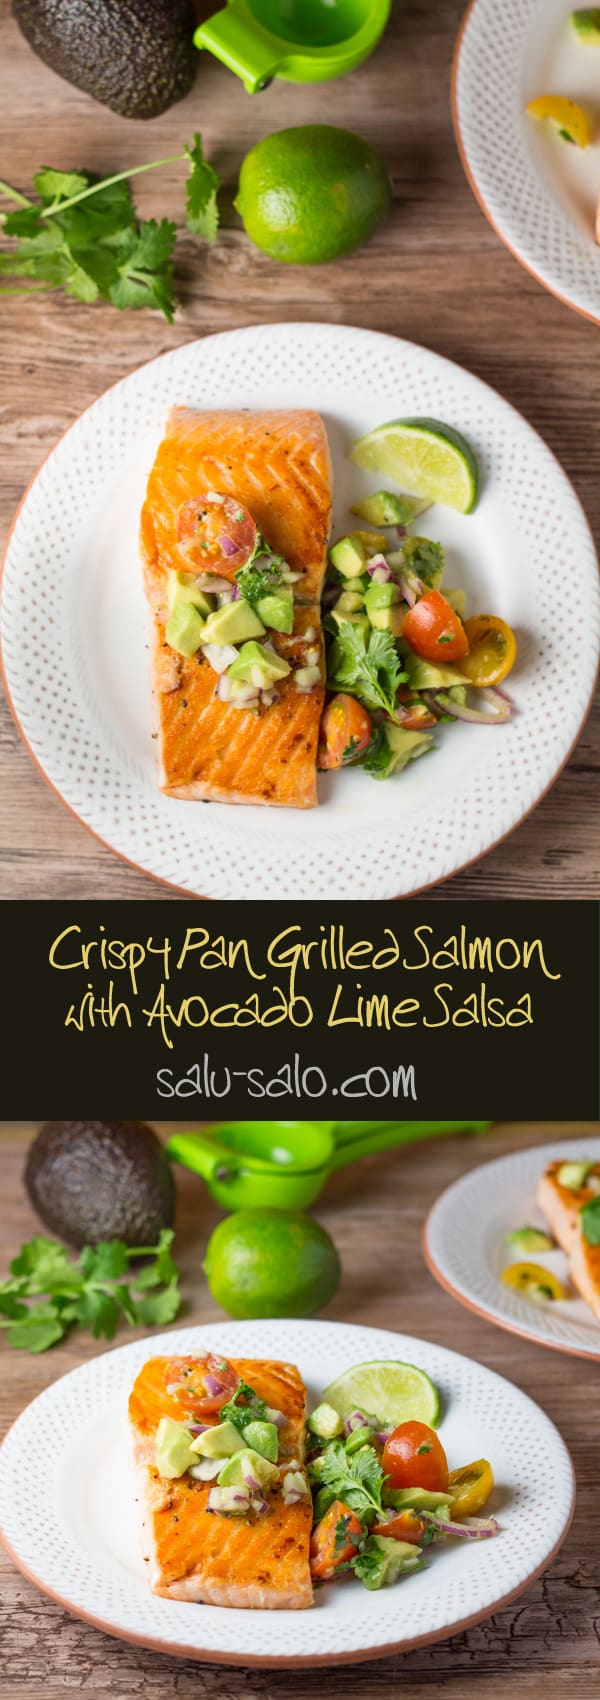 Crispy Pan Grilled Salmon with Avocado Lime Salsa